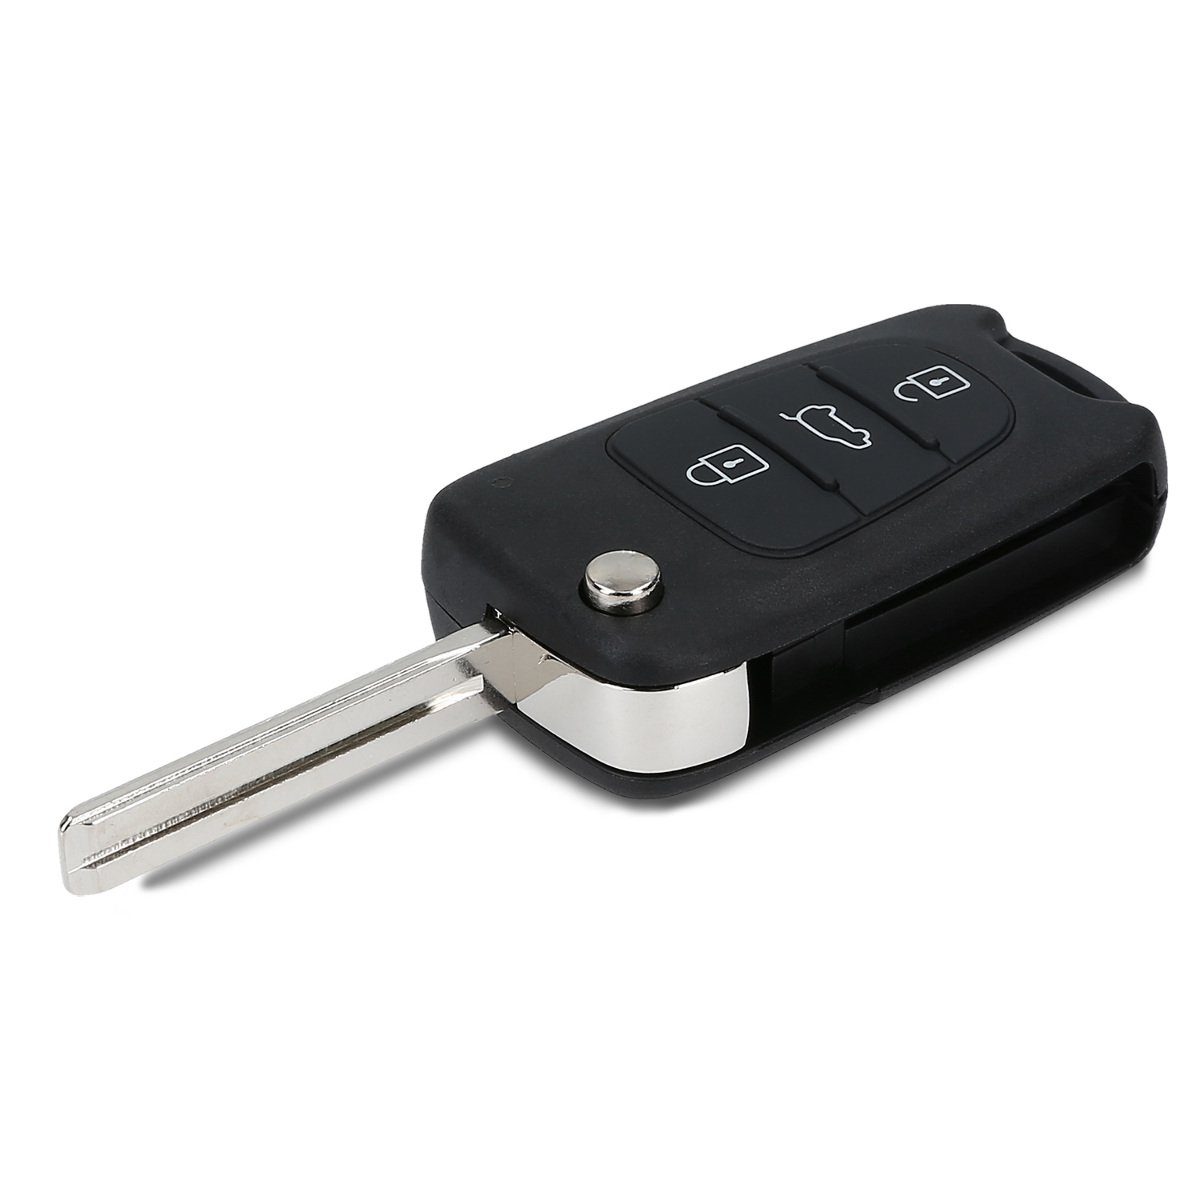 - Auto Schlüsseltasche ohne Gehäuse für Schlüsselgehäuse Elektronik Autoschlüssel, Batterien Transponder kwmobile Hyundai